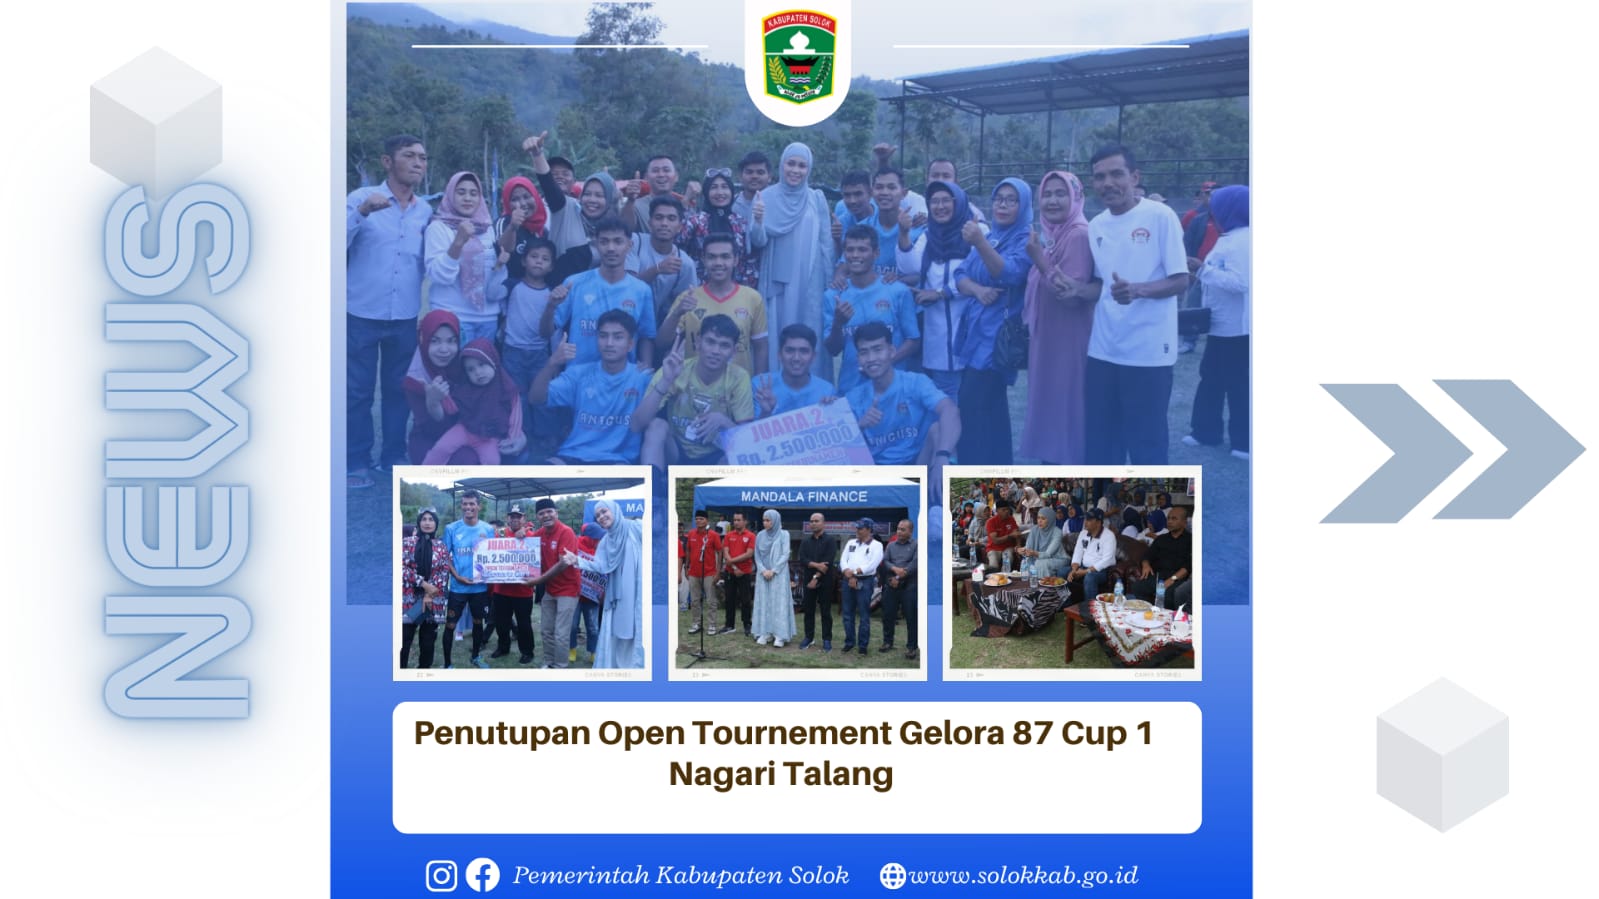 Penutupan Open Tournament Gelora 87 Cup 1 Nagari Talang